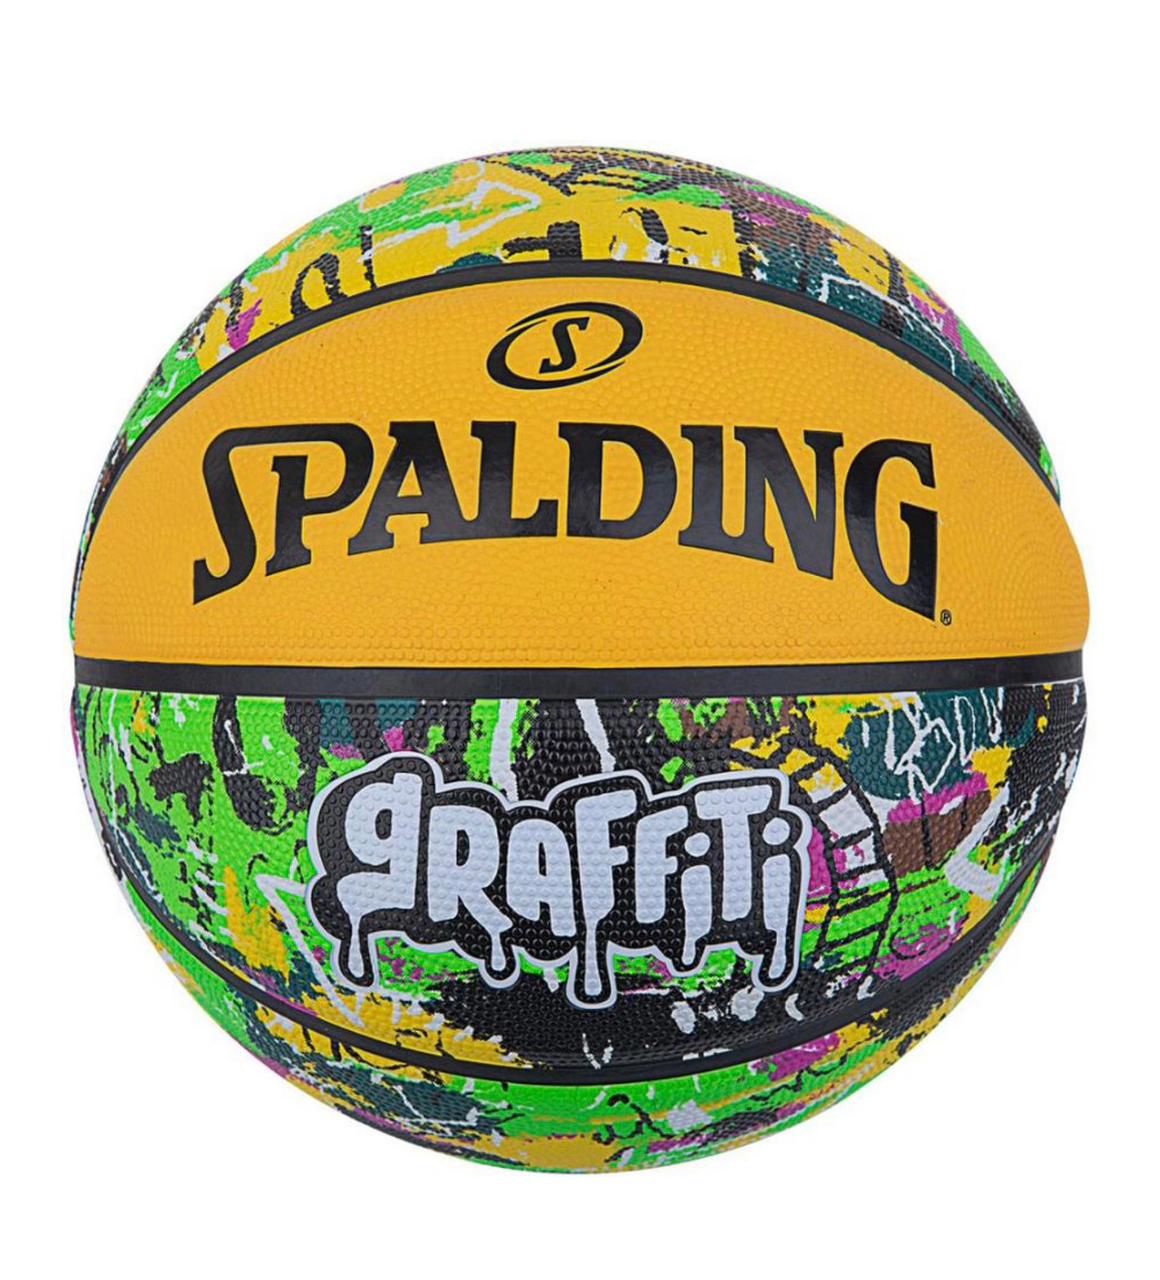 Spalding Graffiti Yellow/Black Basketball